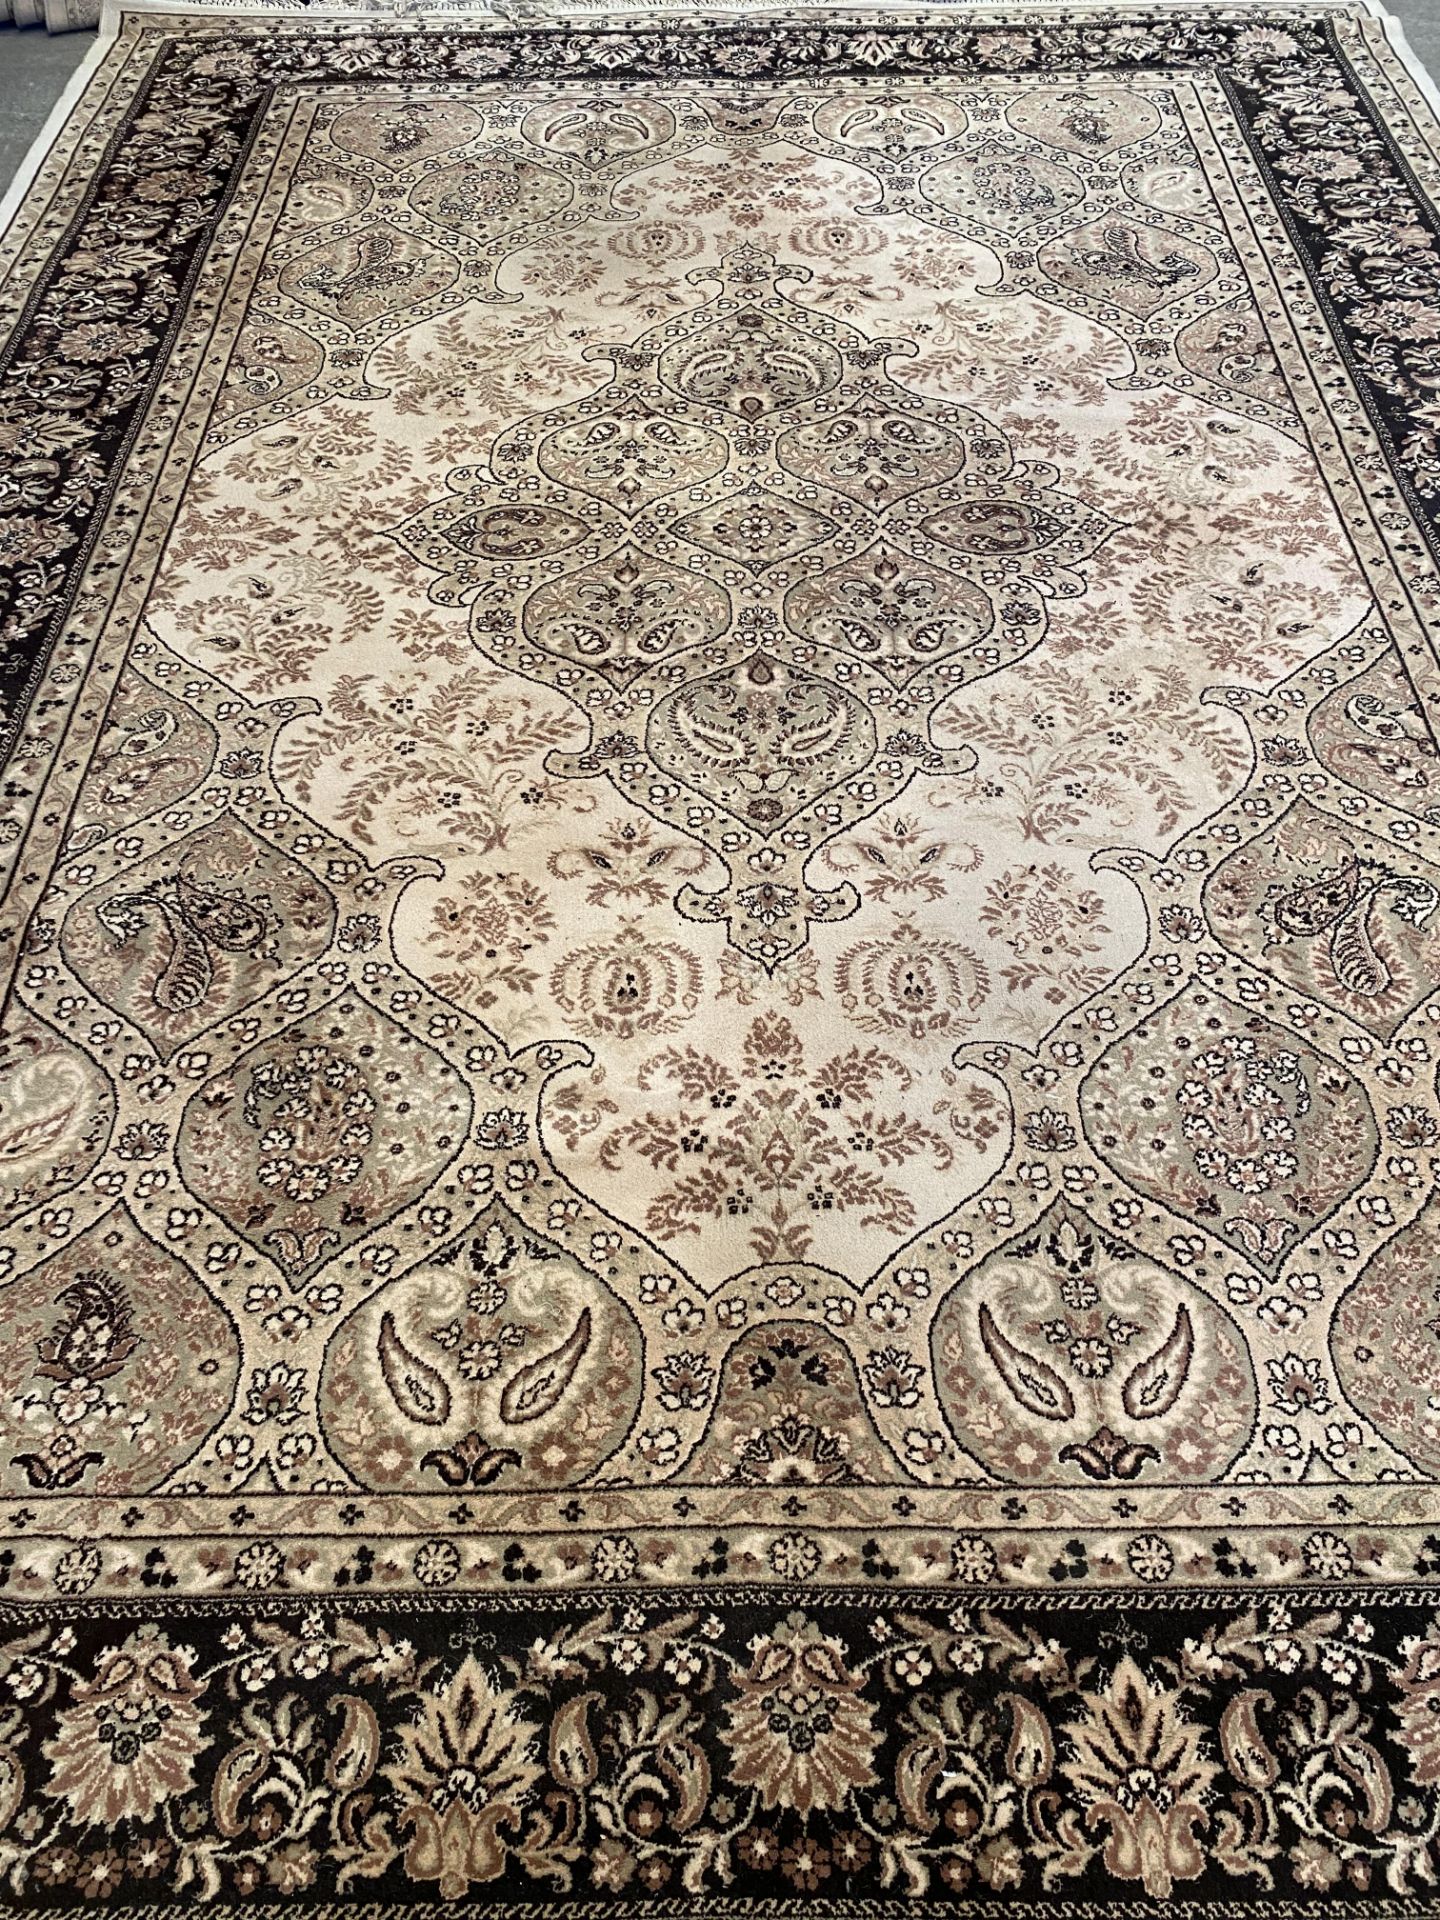 Super Keshan wool carpet